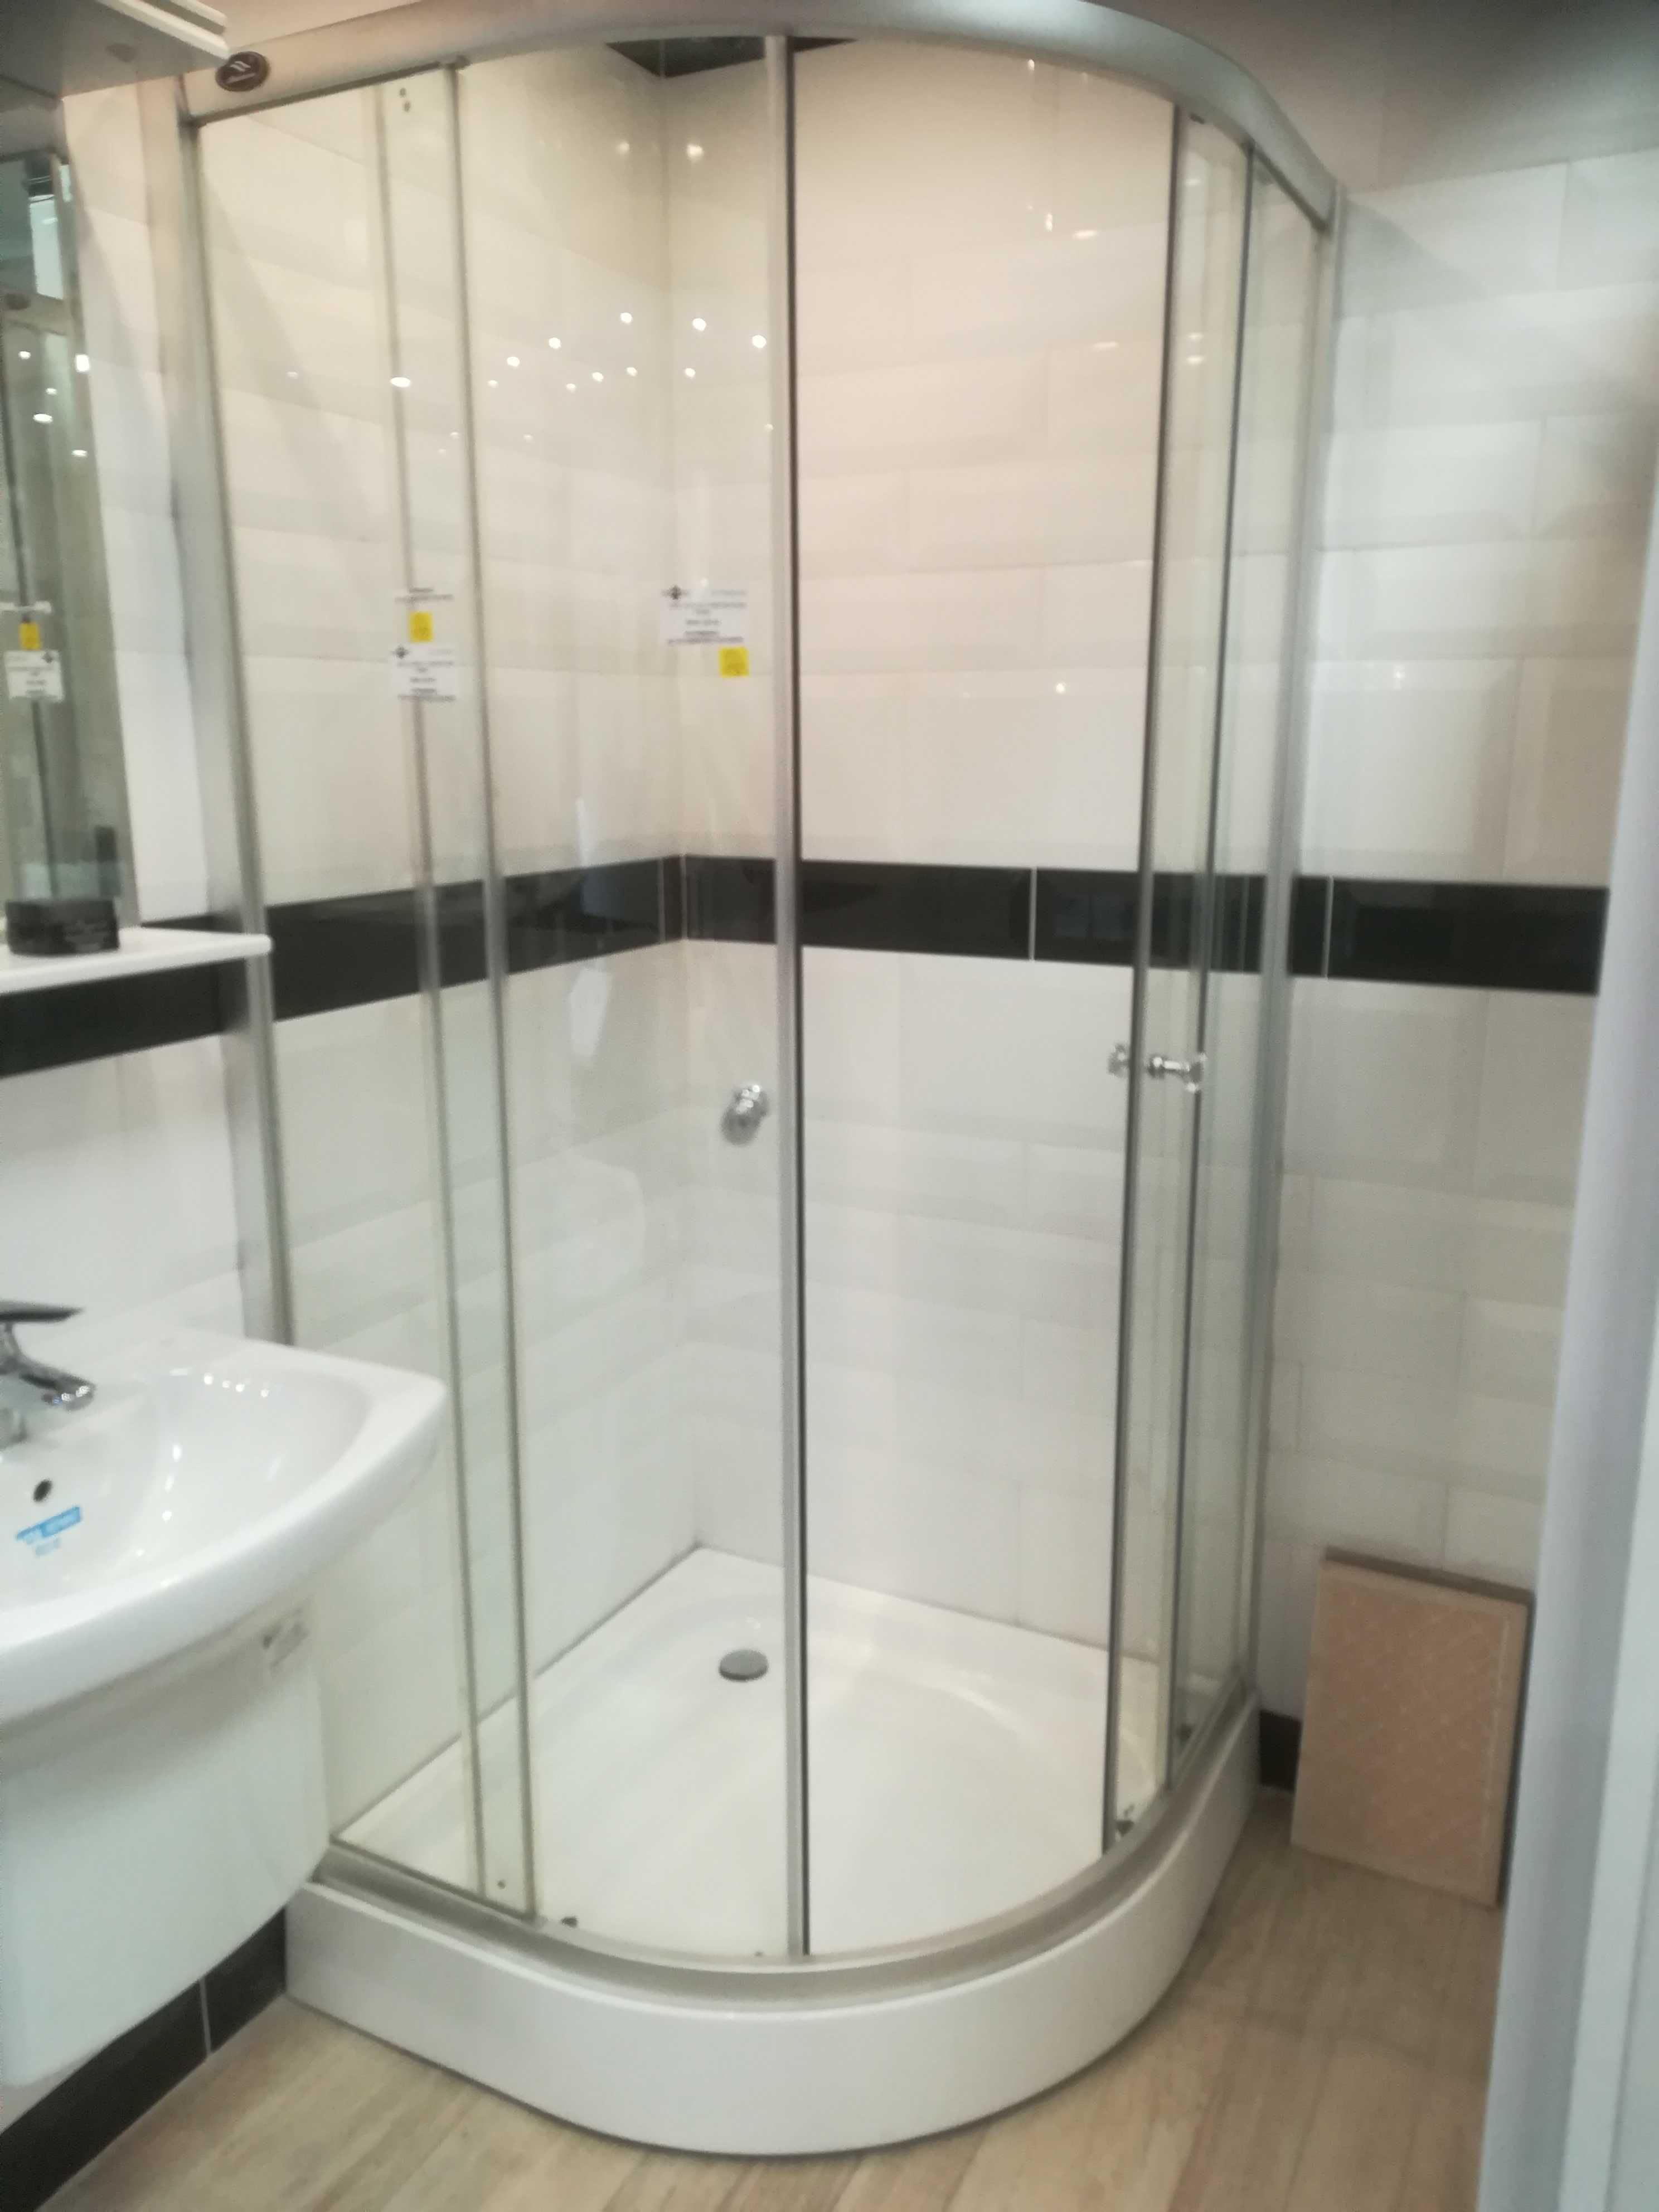 Kabiny prysznicowe nowe wyprzedaż cena od 500zl